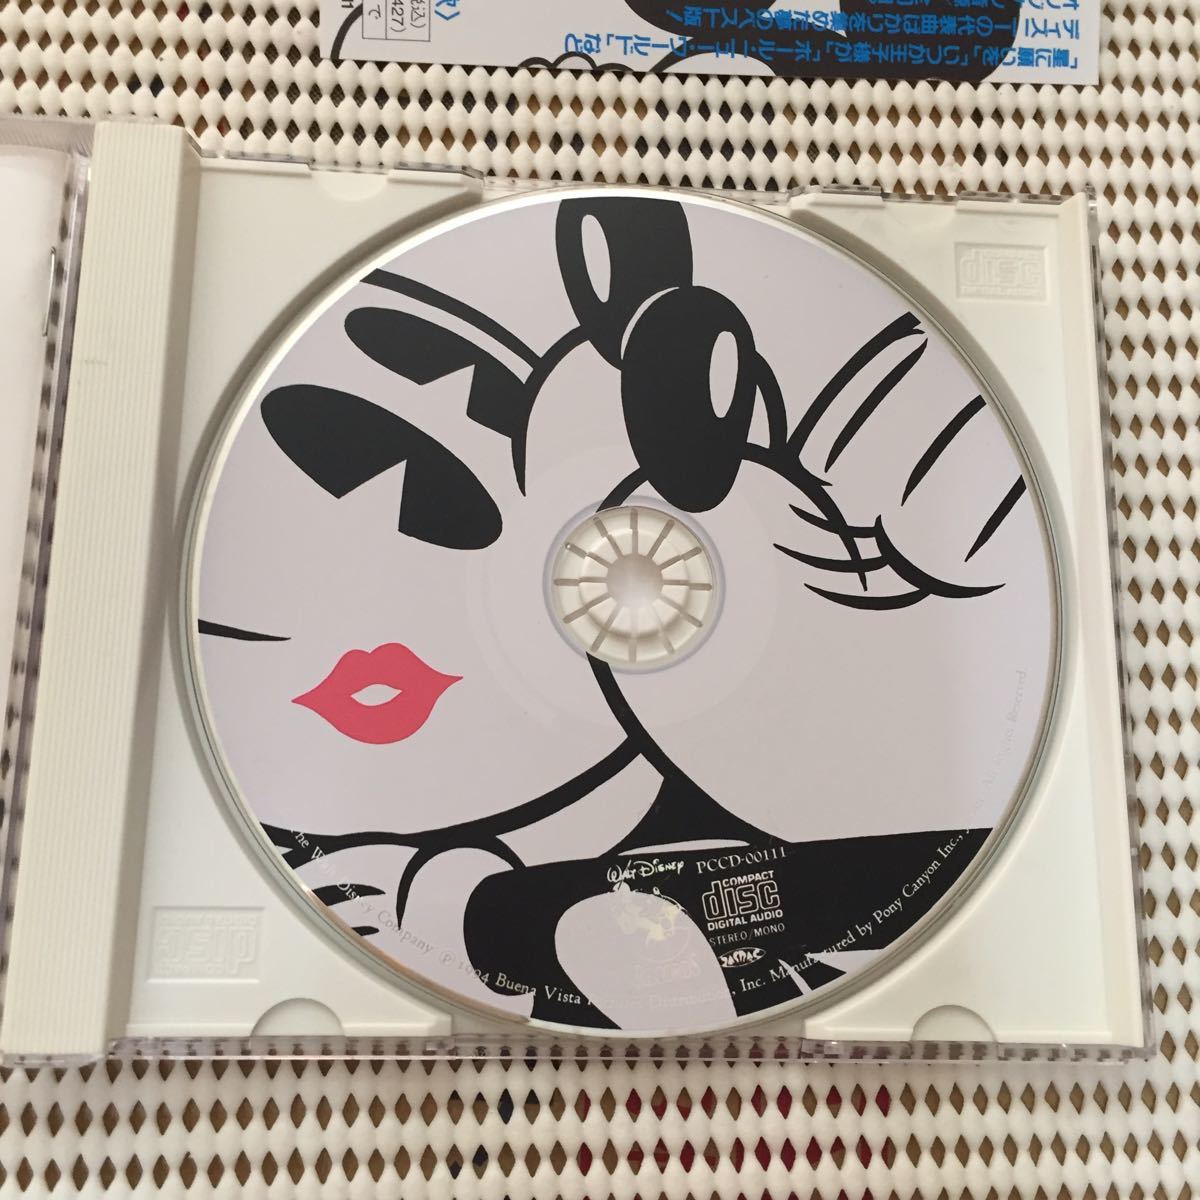 ディズニー・スーパー・ベスト 英語版ピクチャーCD PCCD-00111